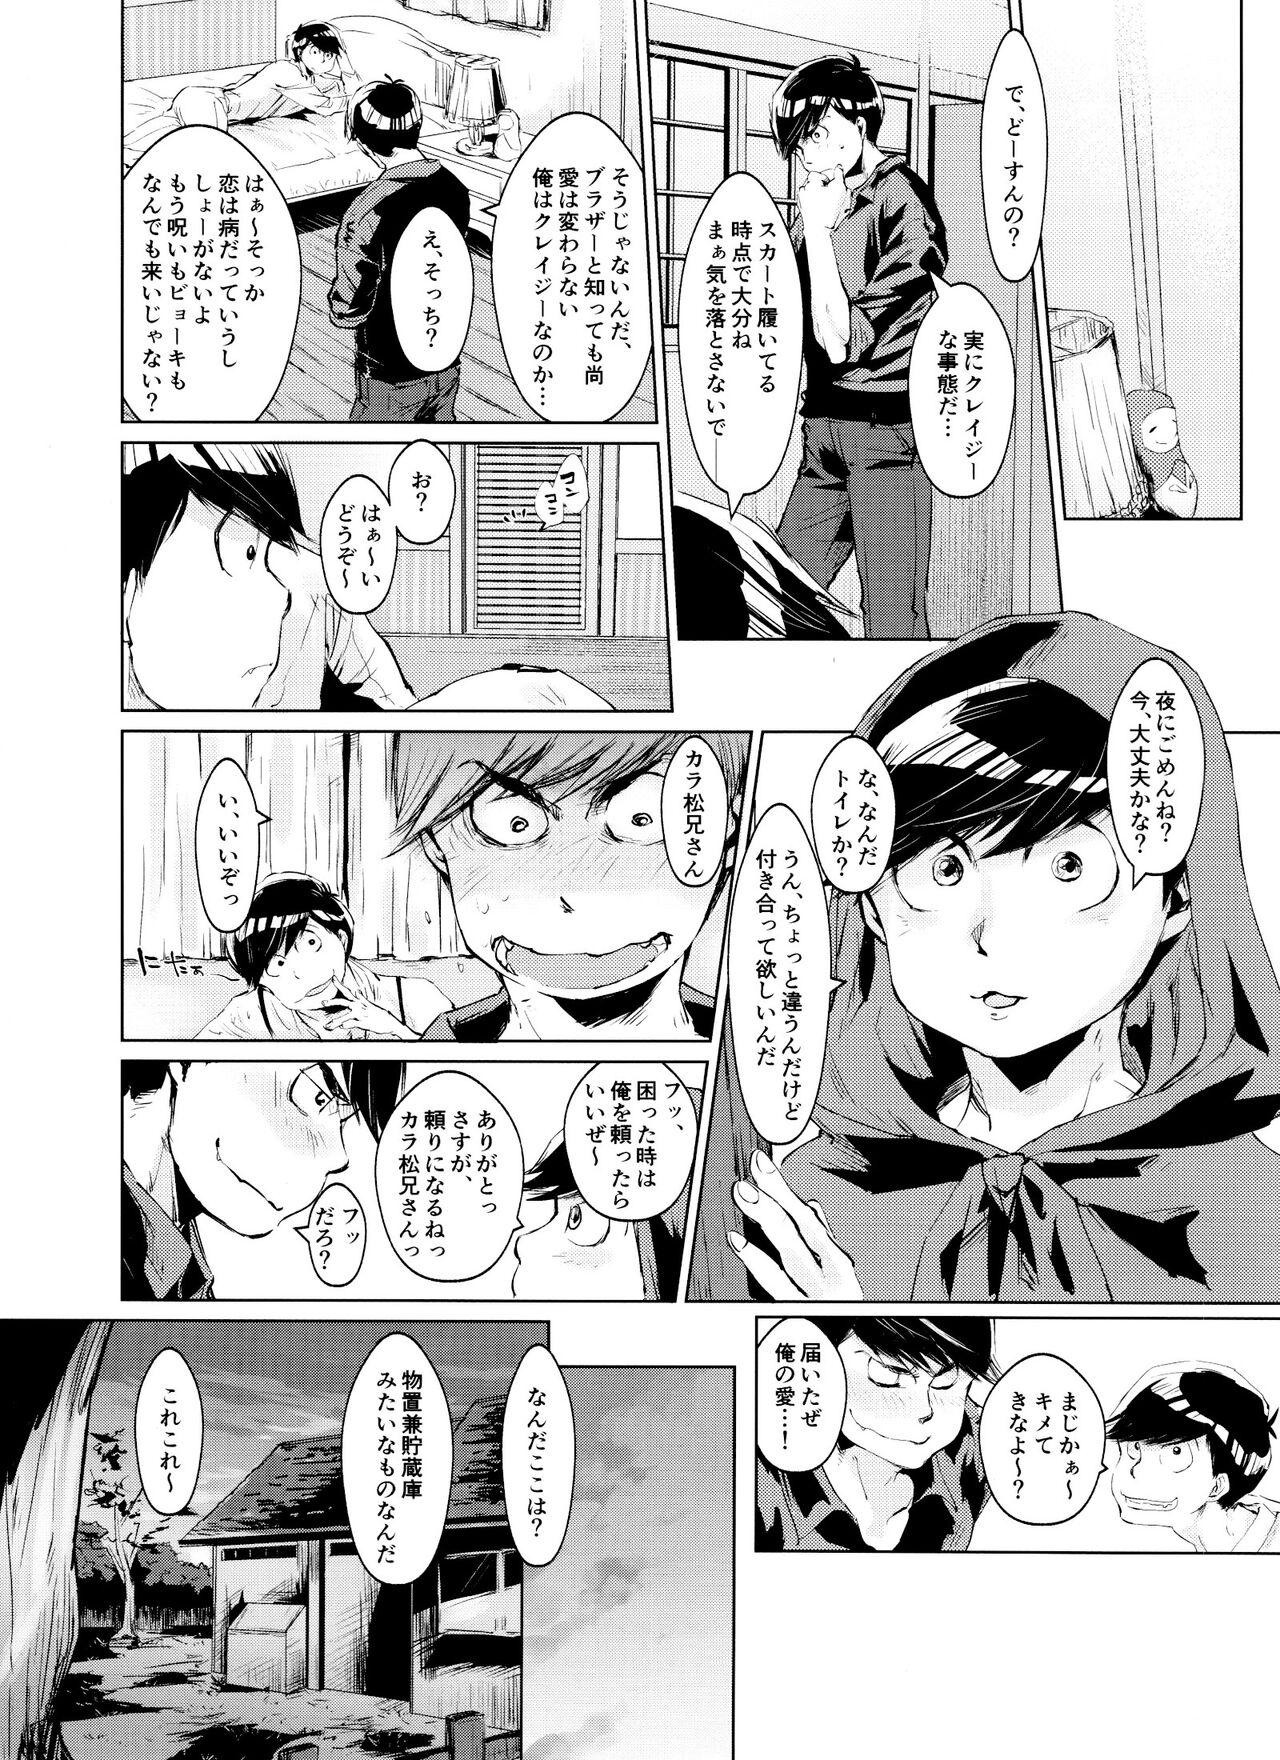 Tugging Boku no Ookami-san wa Aisaretakuta Shikata ga Nai - Osomatsu san Butt - Page 8